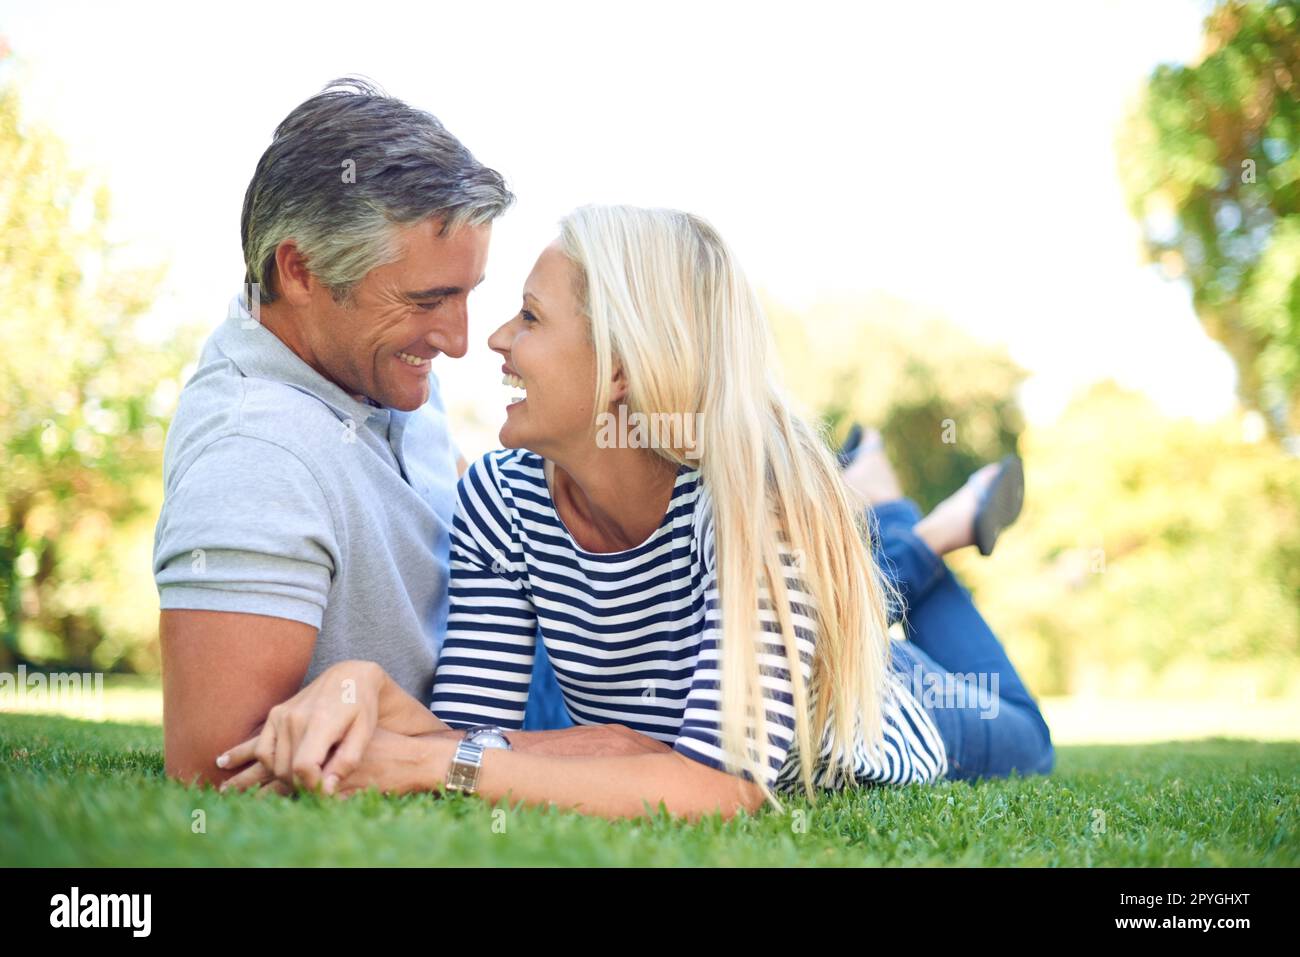 Conversation et compagnie. Photo en longueur d'un couple affectueux et mûr allongé face à face dans le parc. Banque D'Images